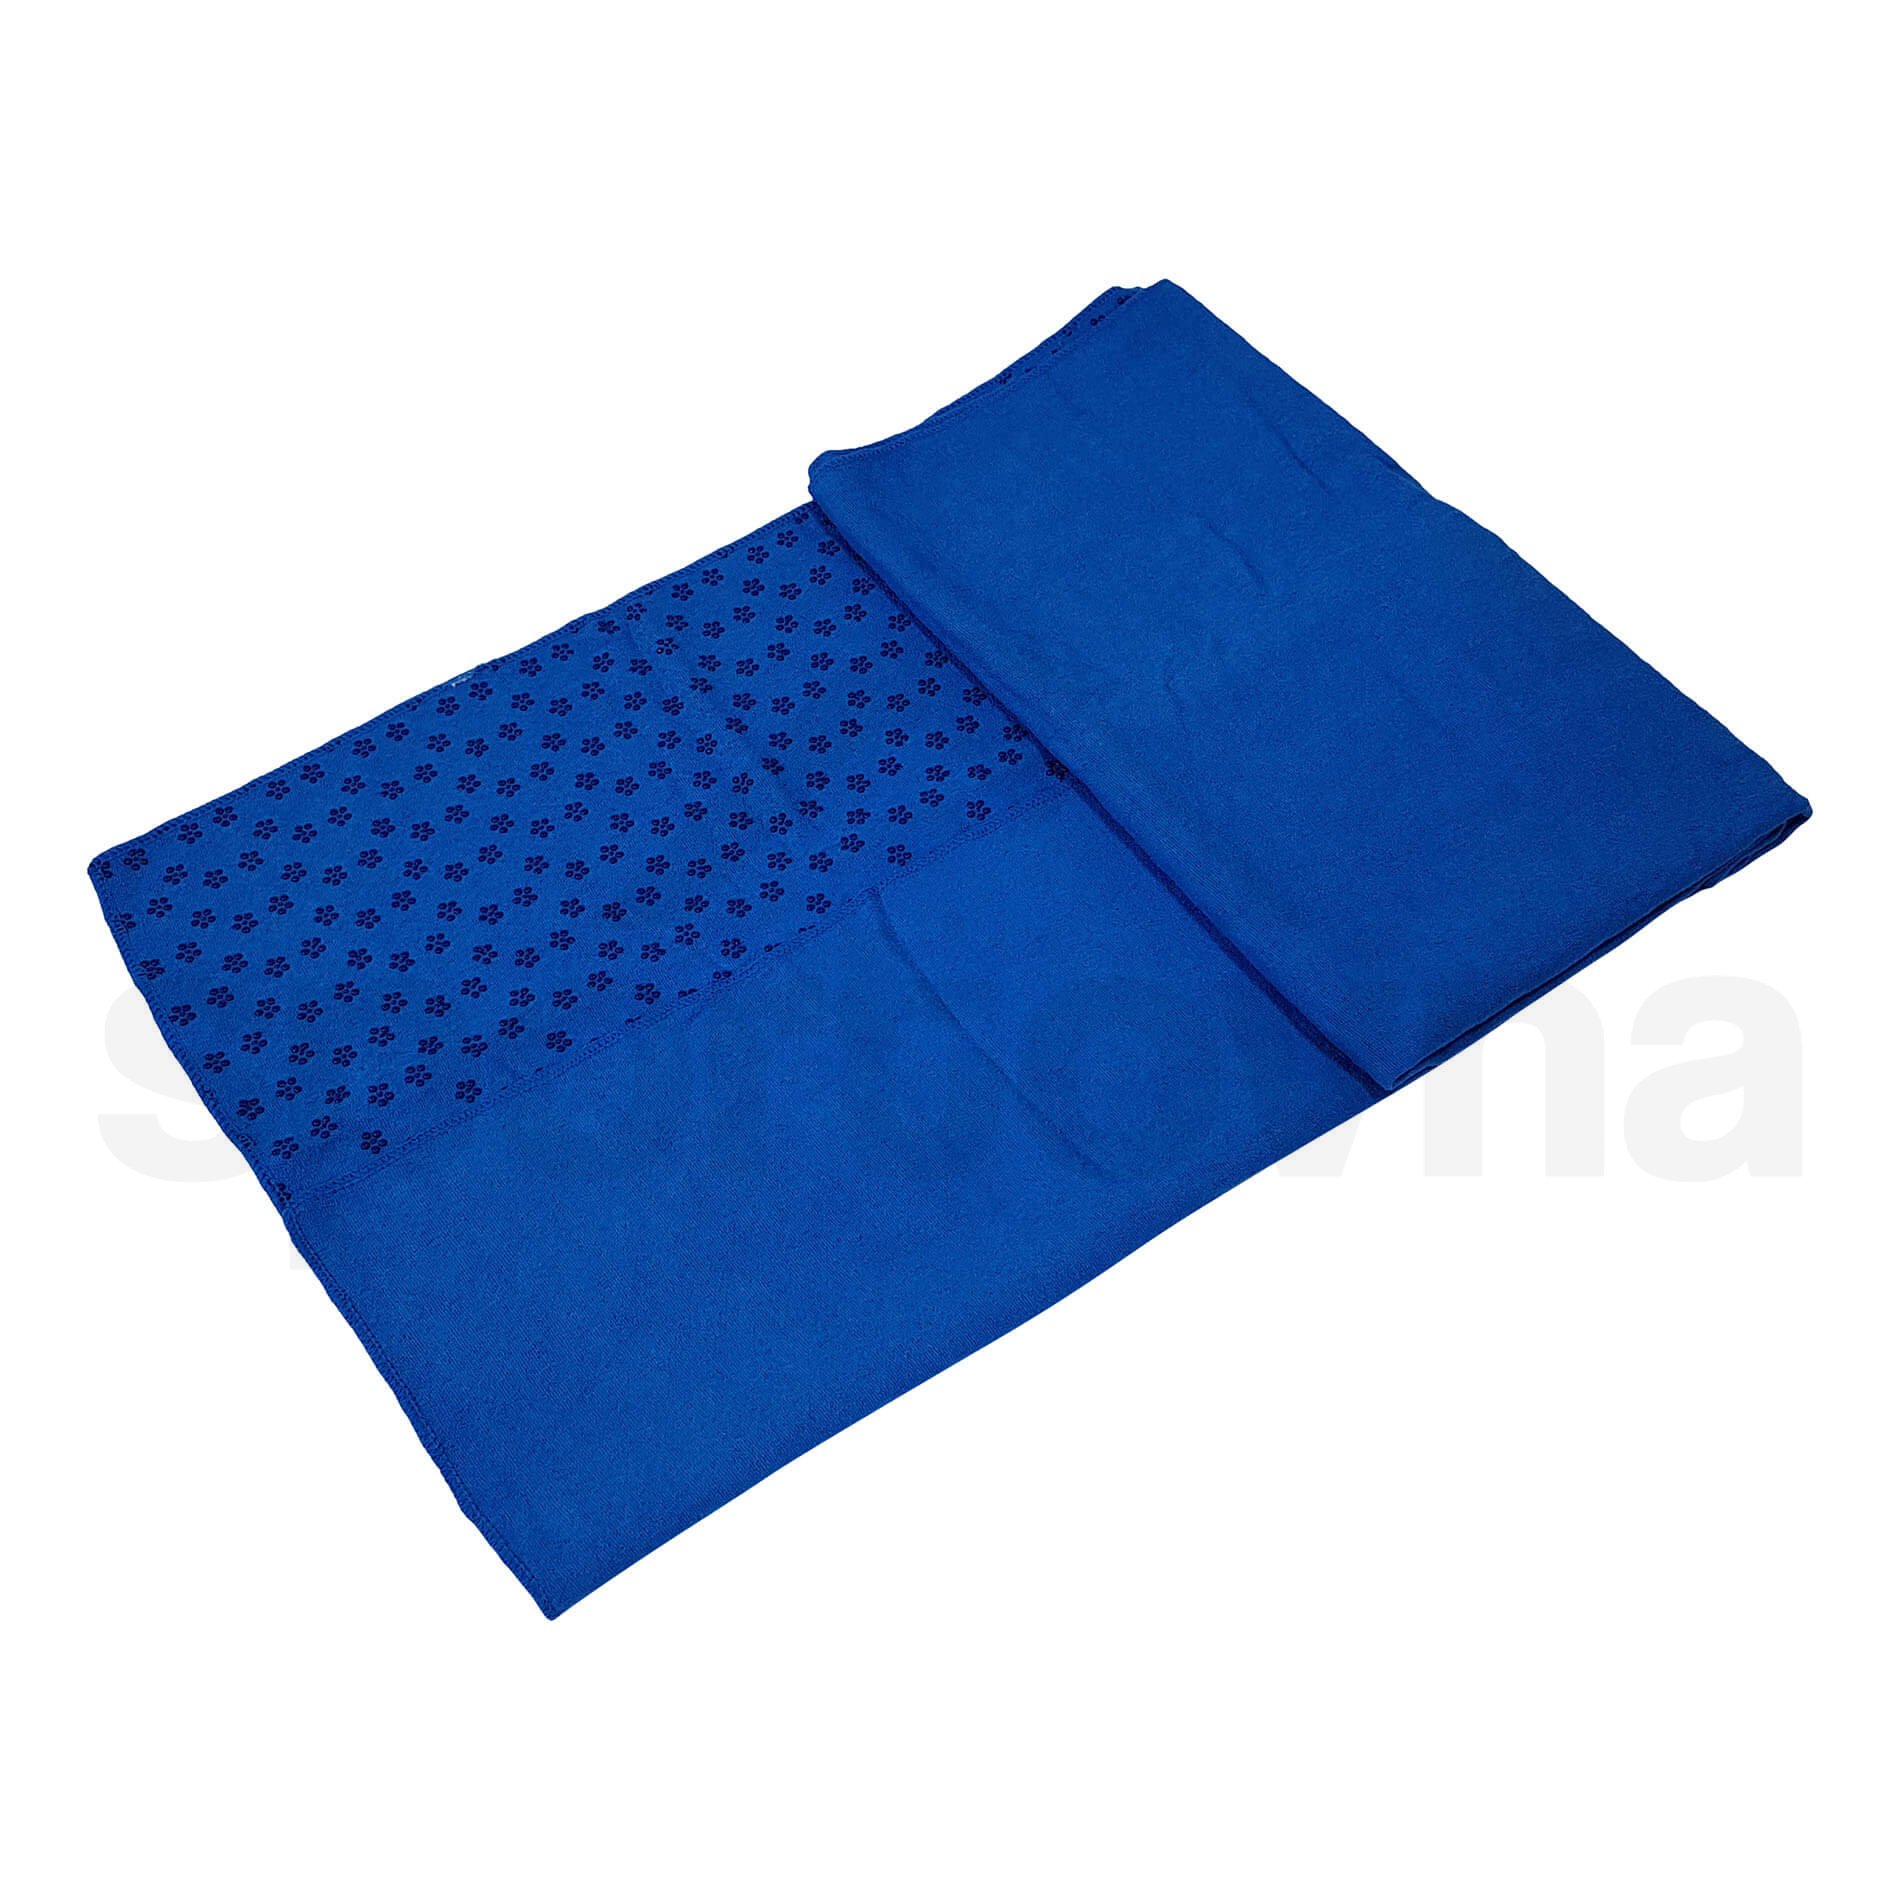 Ručník Tunturi 180 x 63cm s taškou - modrý